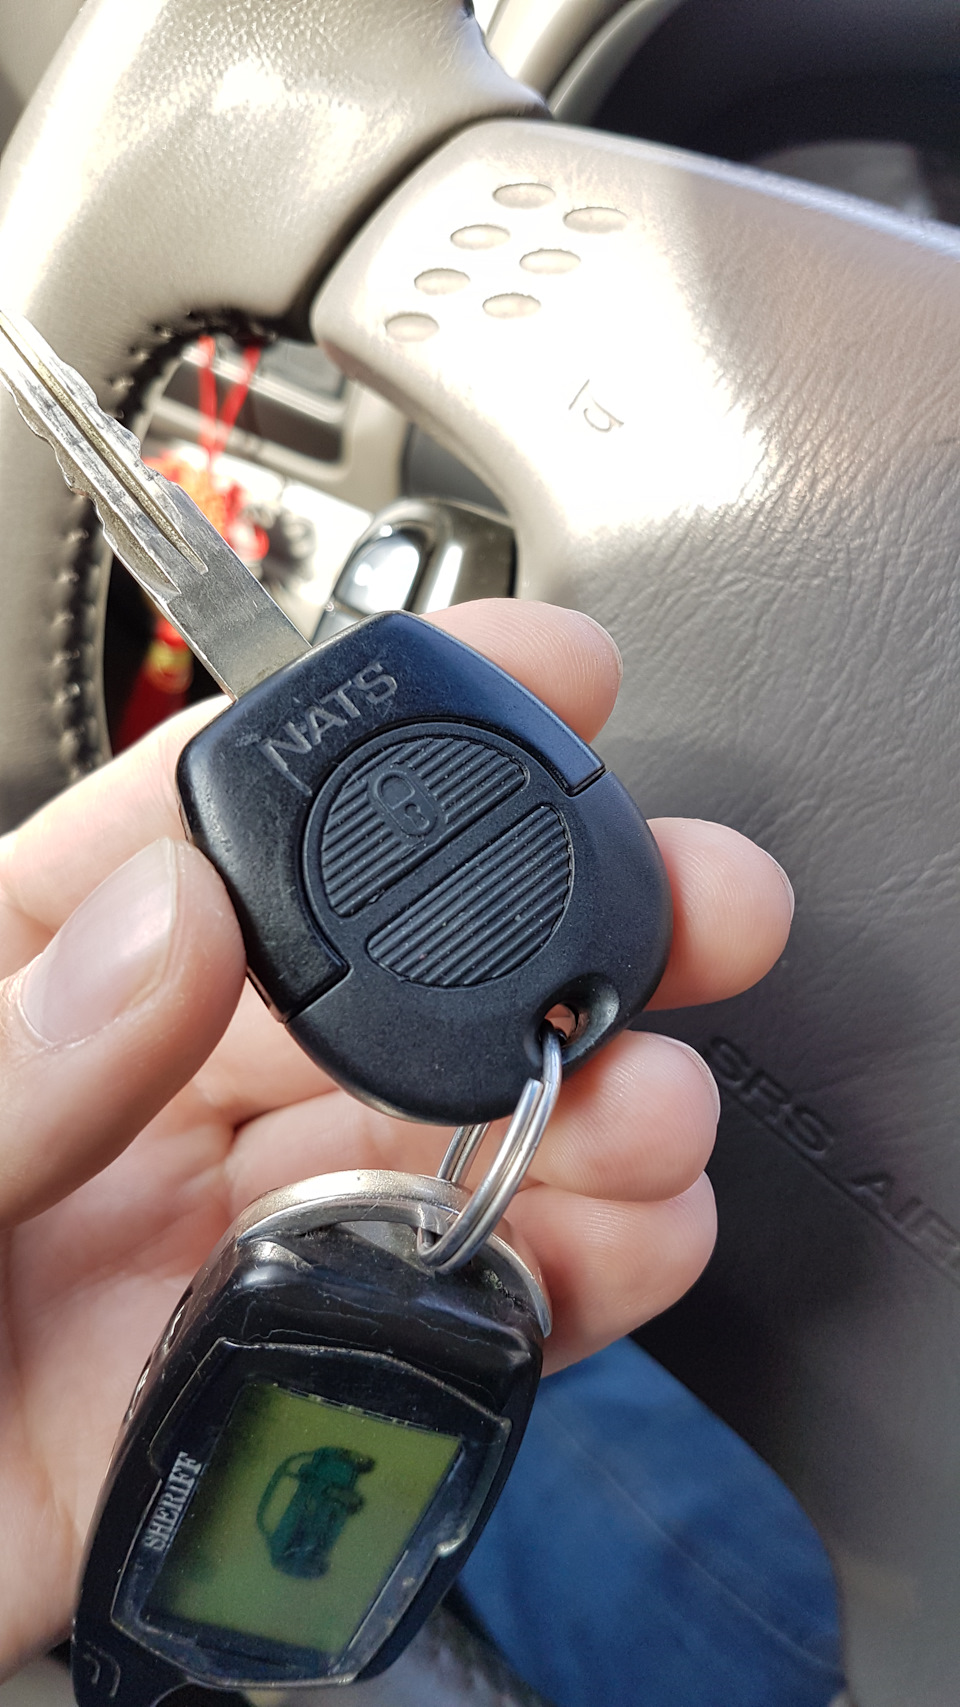 Потеряли ключ от сигнализации машины. Ниссан v35 ключ сигнализации. Ключи от сигнализации Додж 2002. Ключ для Ниссан Санни с кнопками. Hyundai Bayon ключ сигнализация.